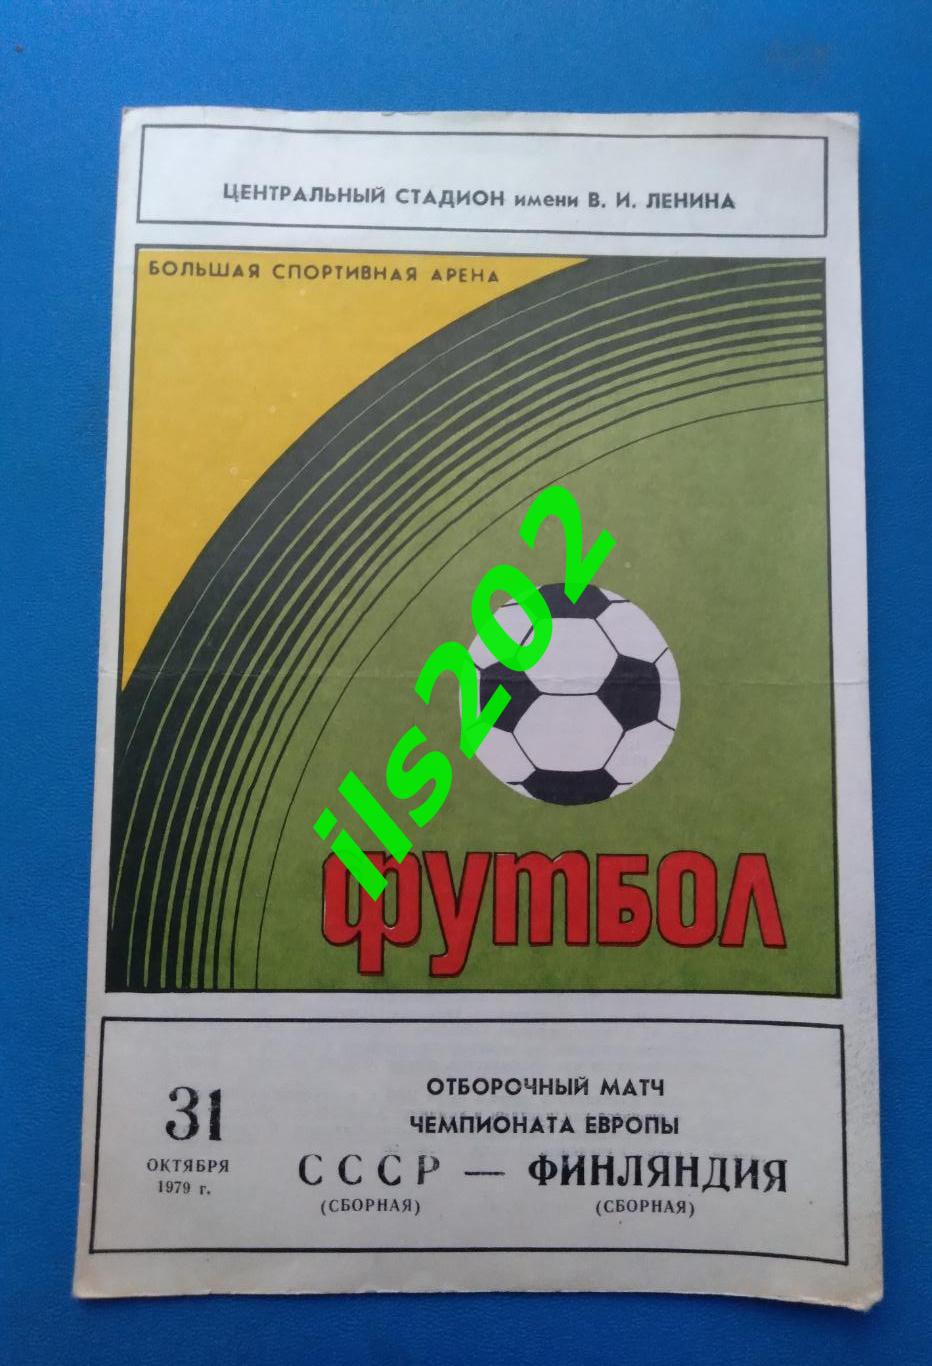 сборная СССР - Финляндия 1979